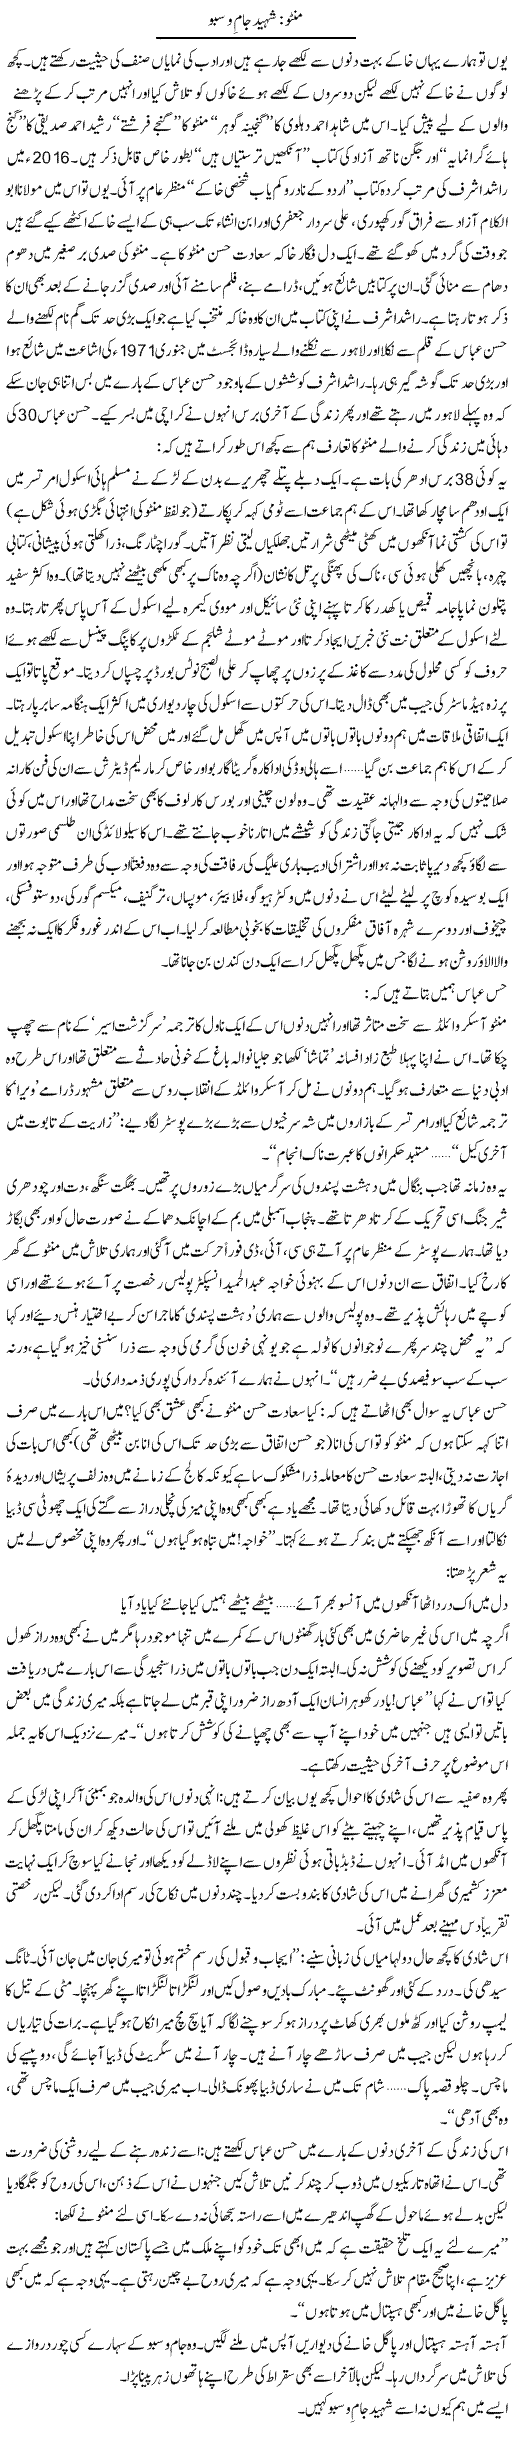 Manto, Shaheed Jaam O Subu | Zahida Hina | Daily Urdu Columns